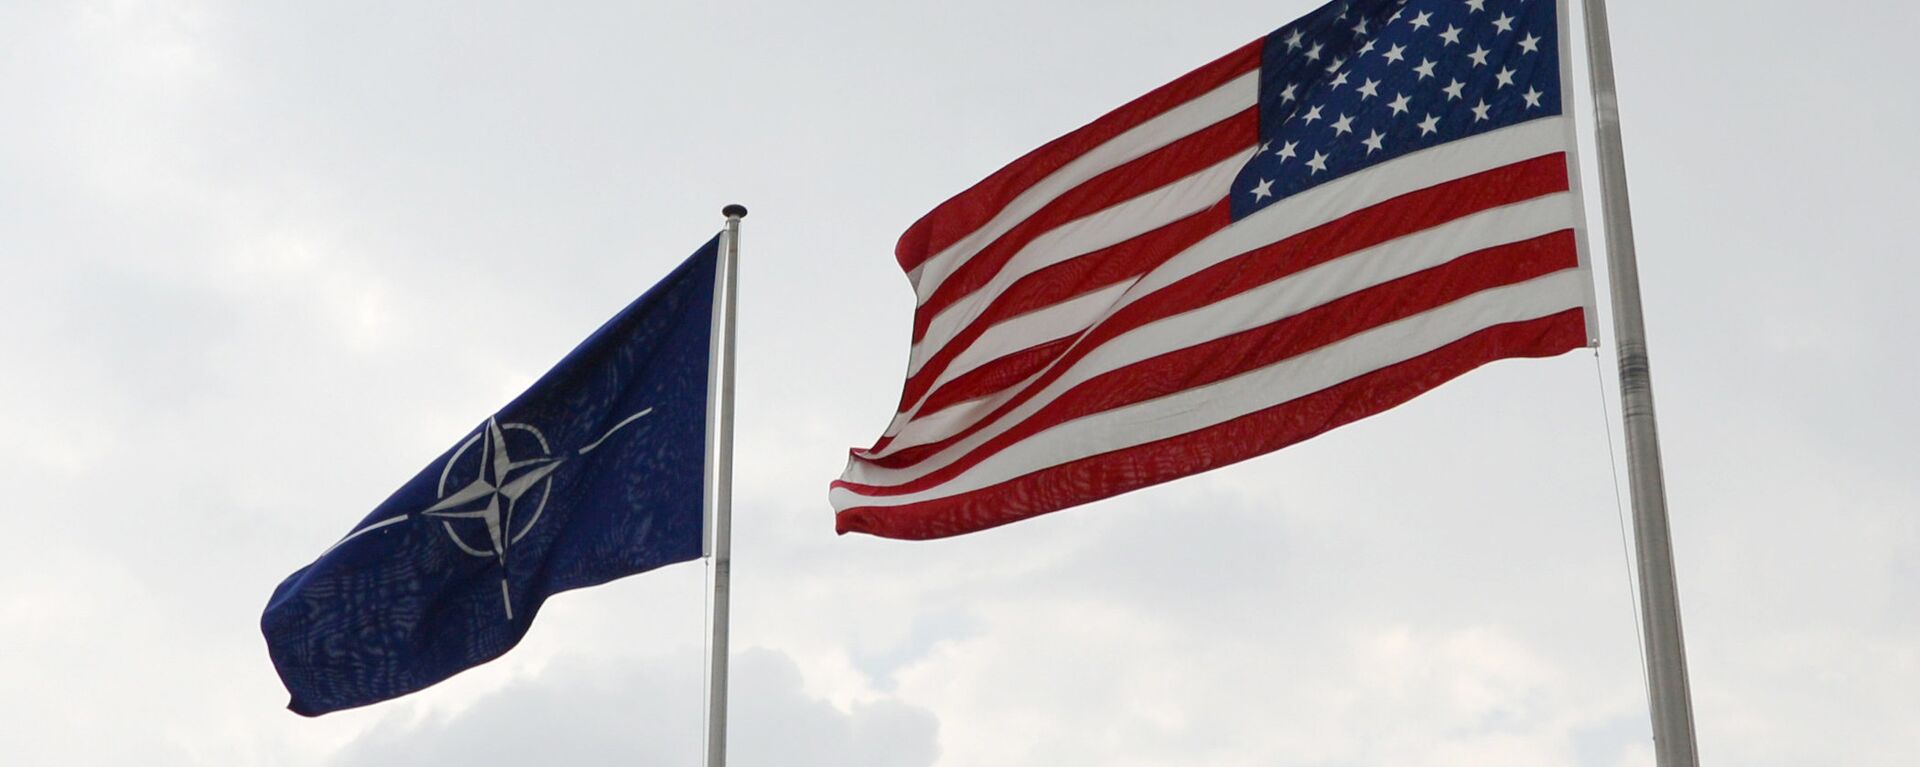 Banderas de EEUU y la OTAN en la sede de la alianza atlántica en Bruselas - Sputnik Mundo, 1920, 23.12.2021